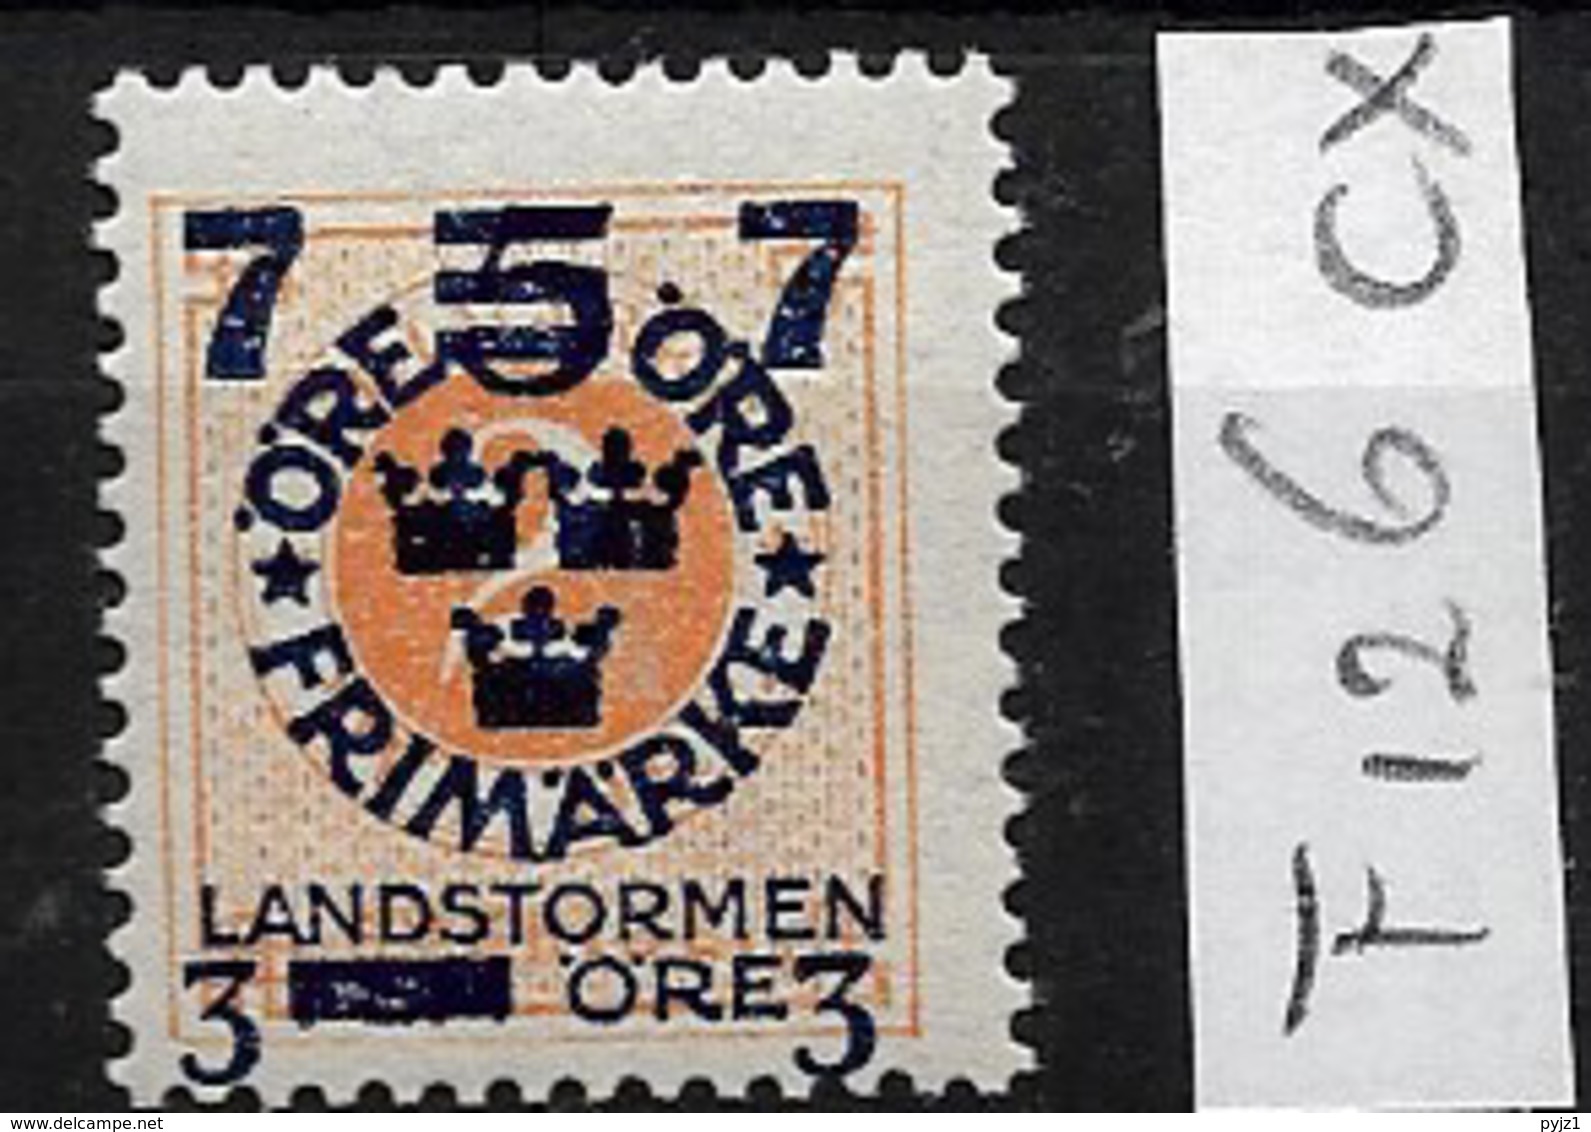 1918 MNH Sweden, Landstrom III: Wm/ - Neufs